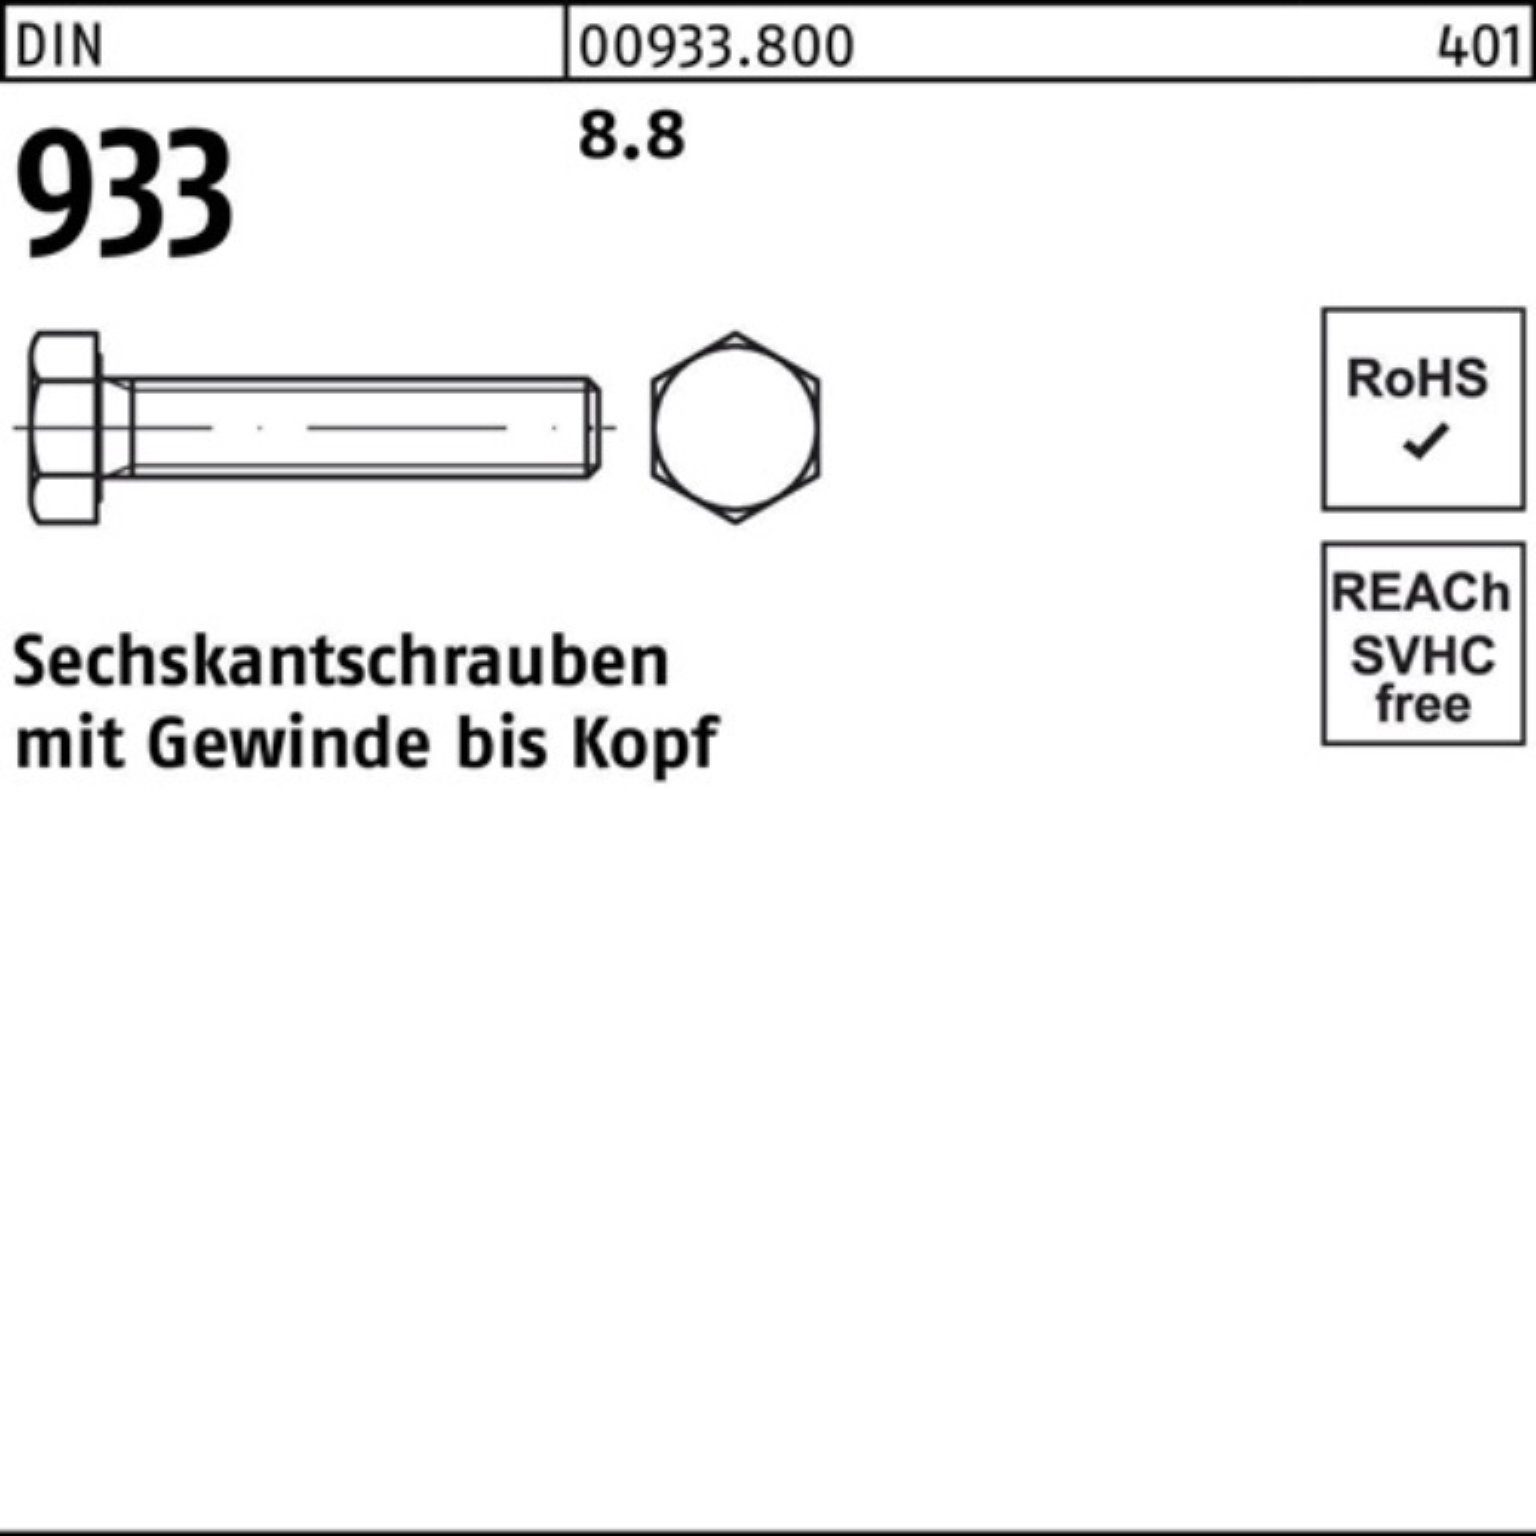 8.8 M39x DIN DIN 90 1 VG 8 Reyher 100er Sechskantschraube Pack Sechskantschraube 933 933 Stück